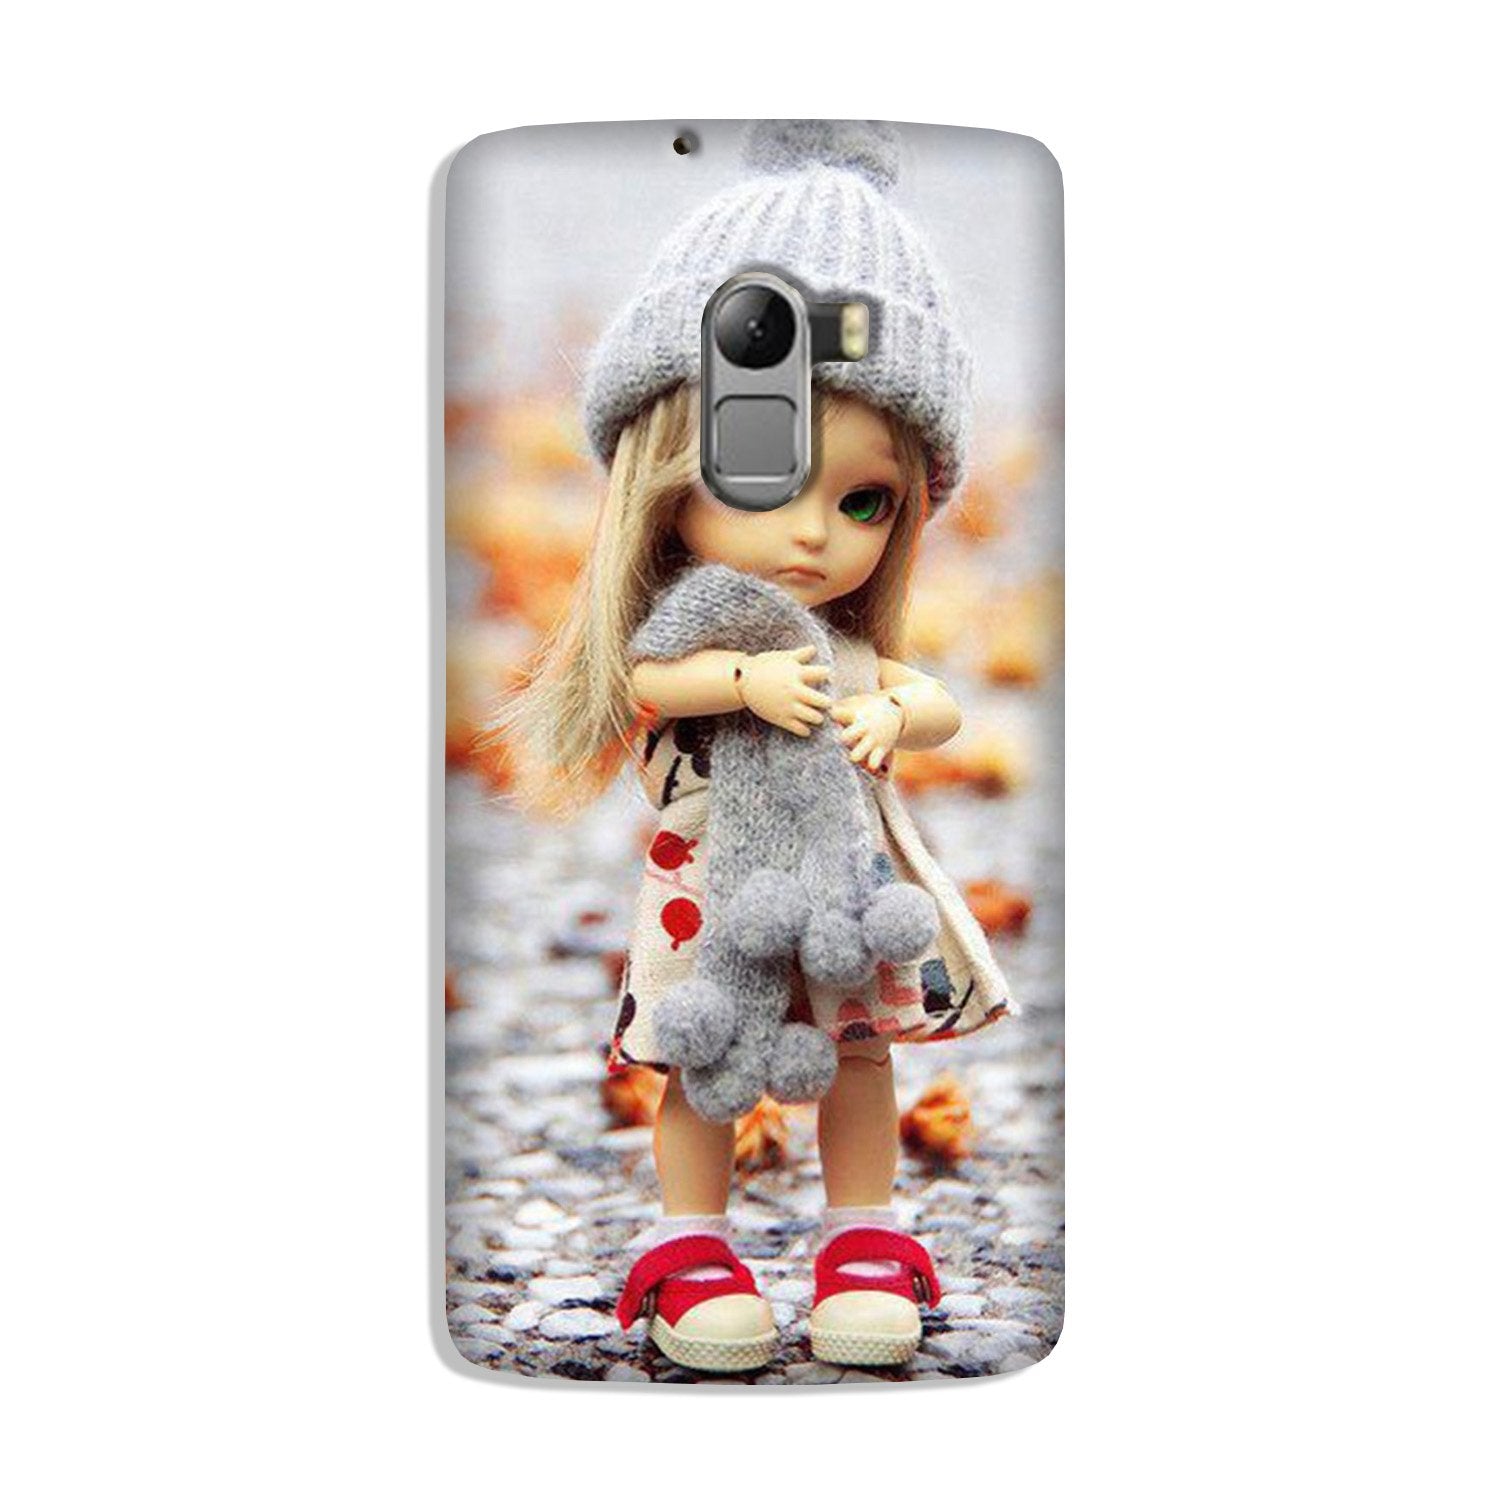 Cute Doll Case for Lenovo K4 Note